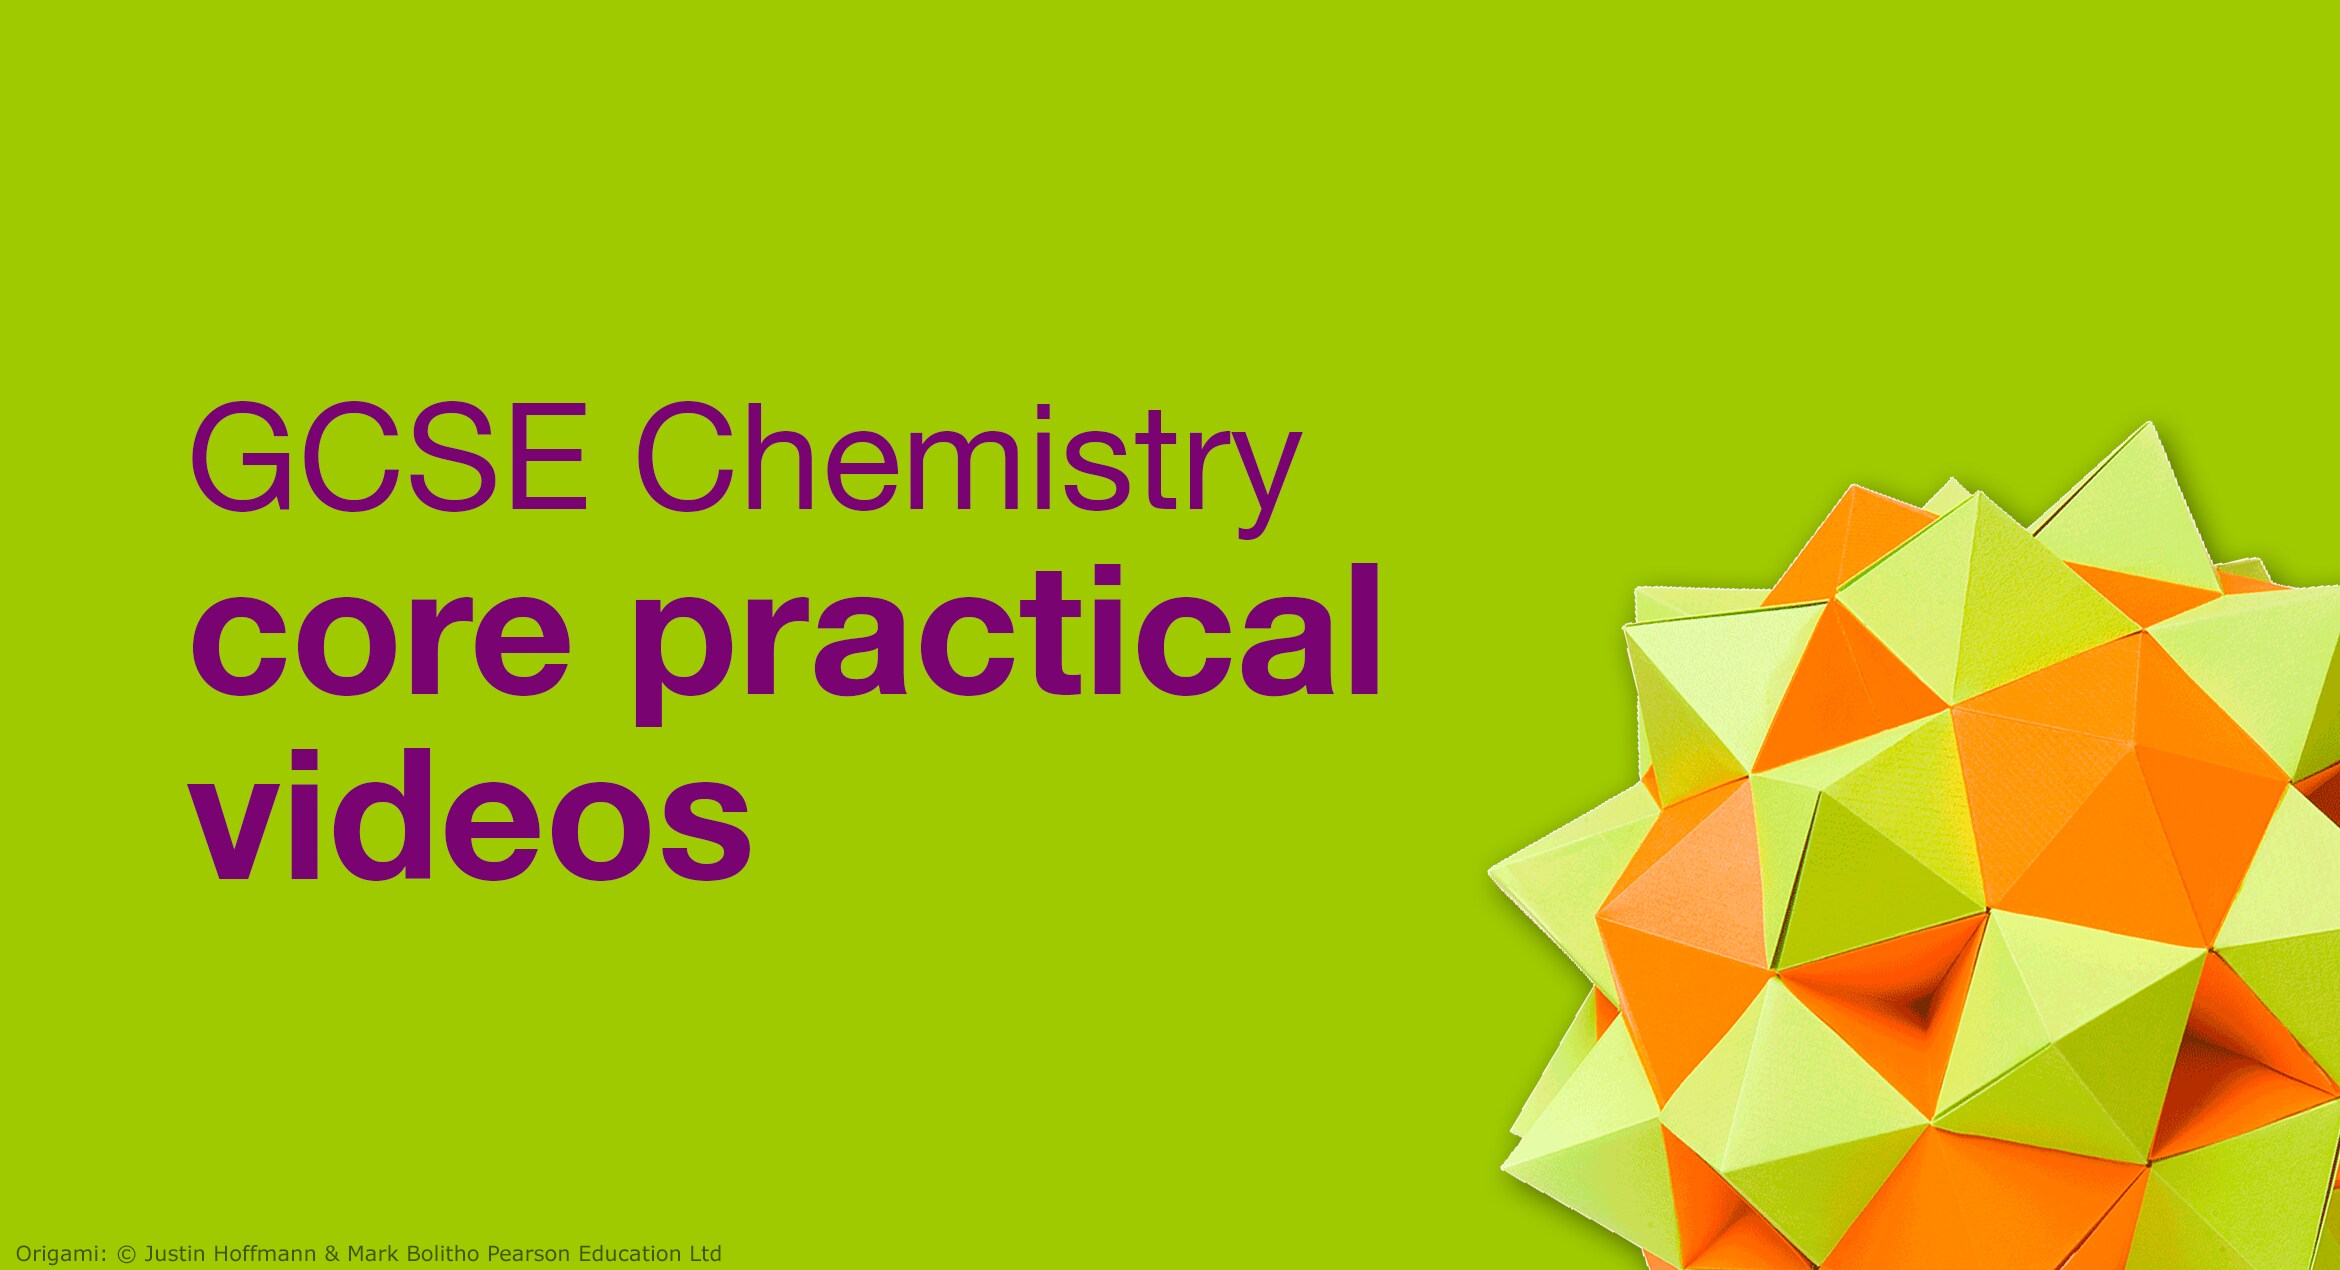 GCSE Chemistry core practical videos